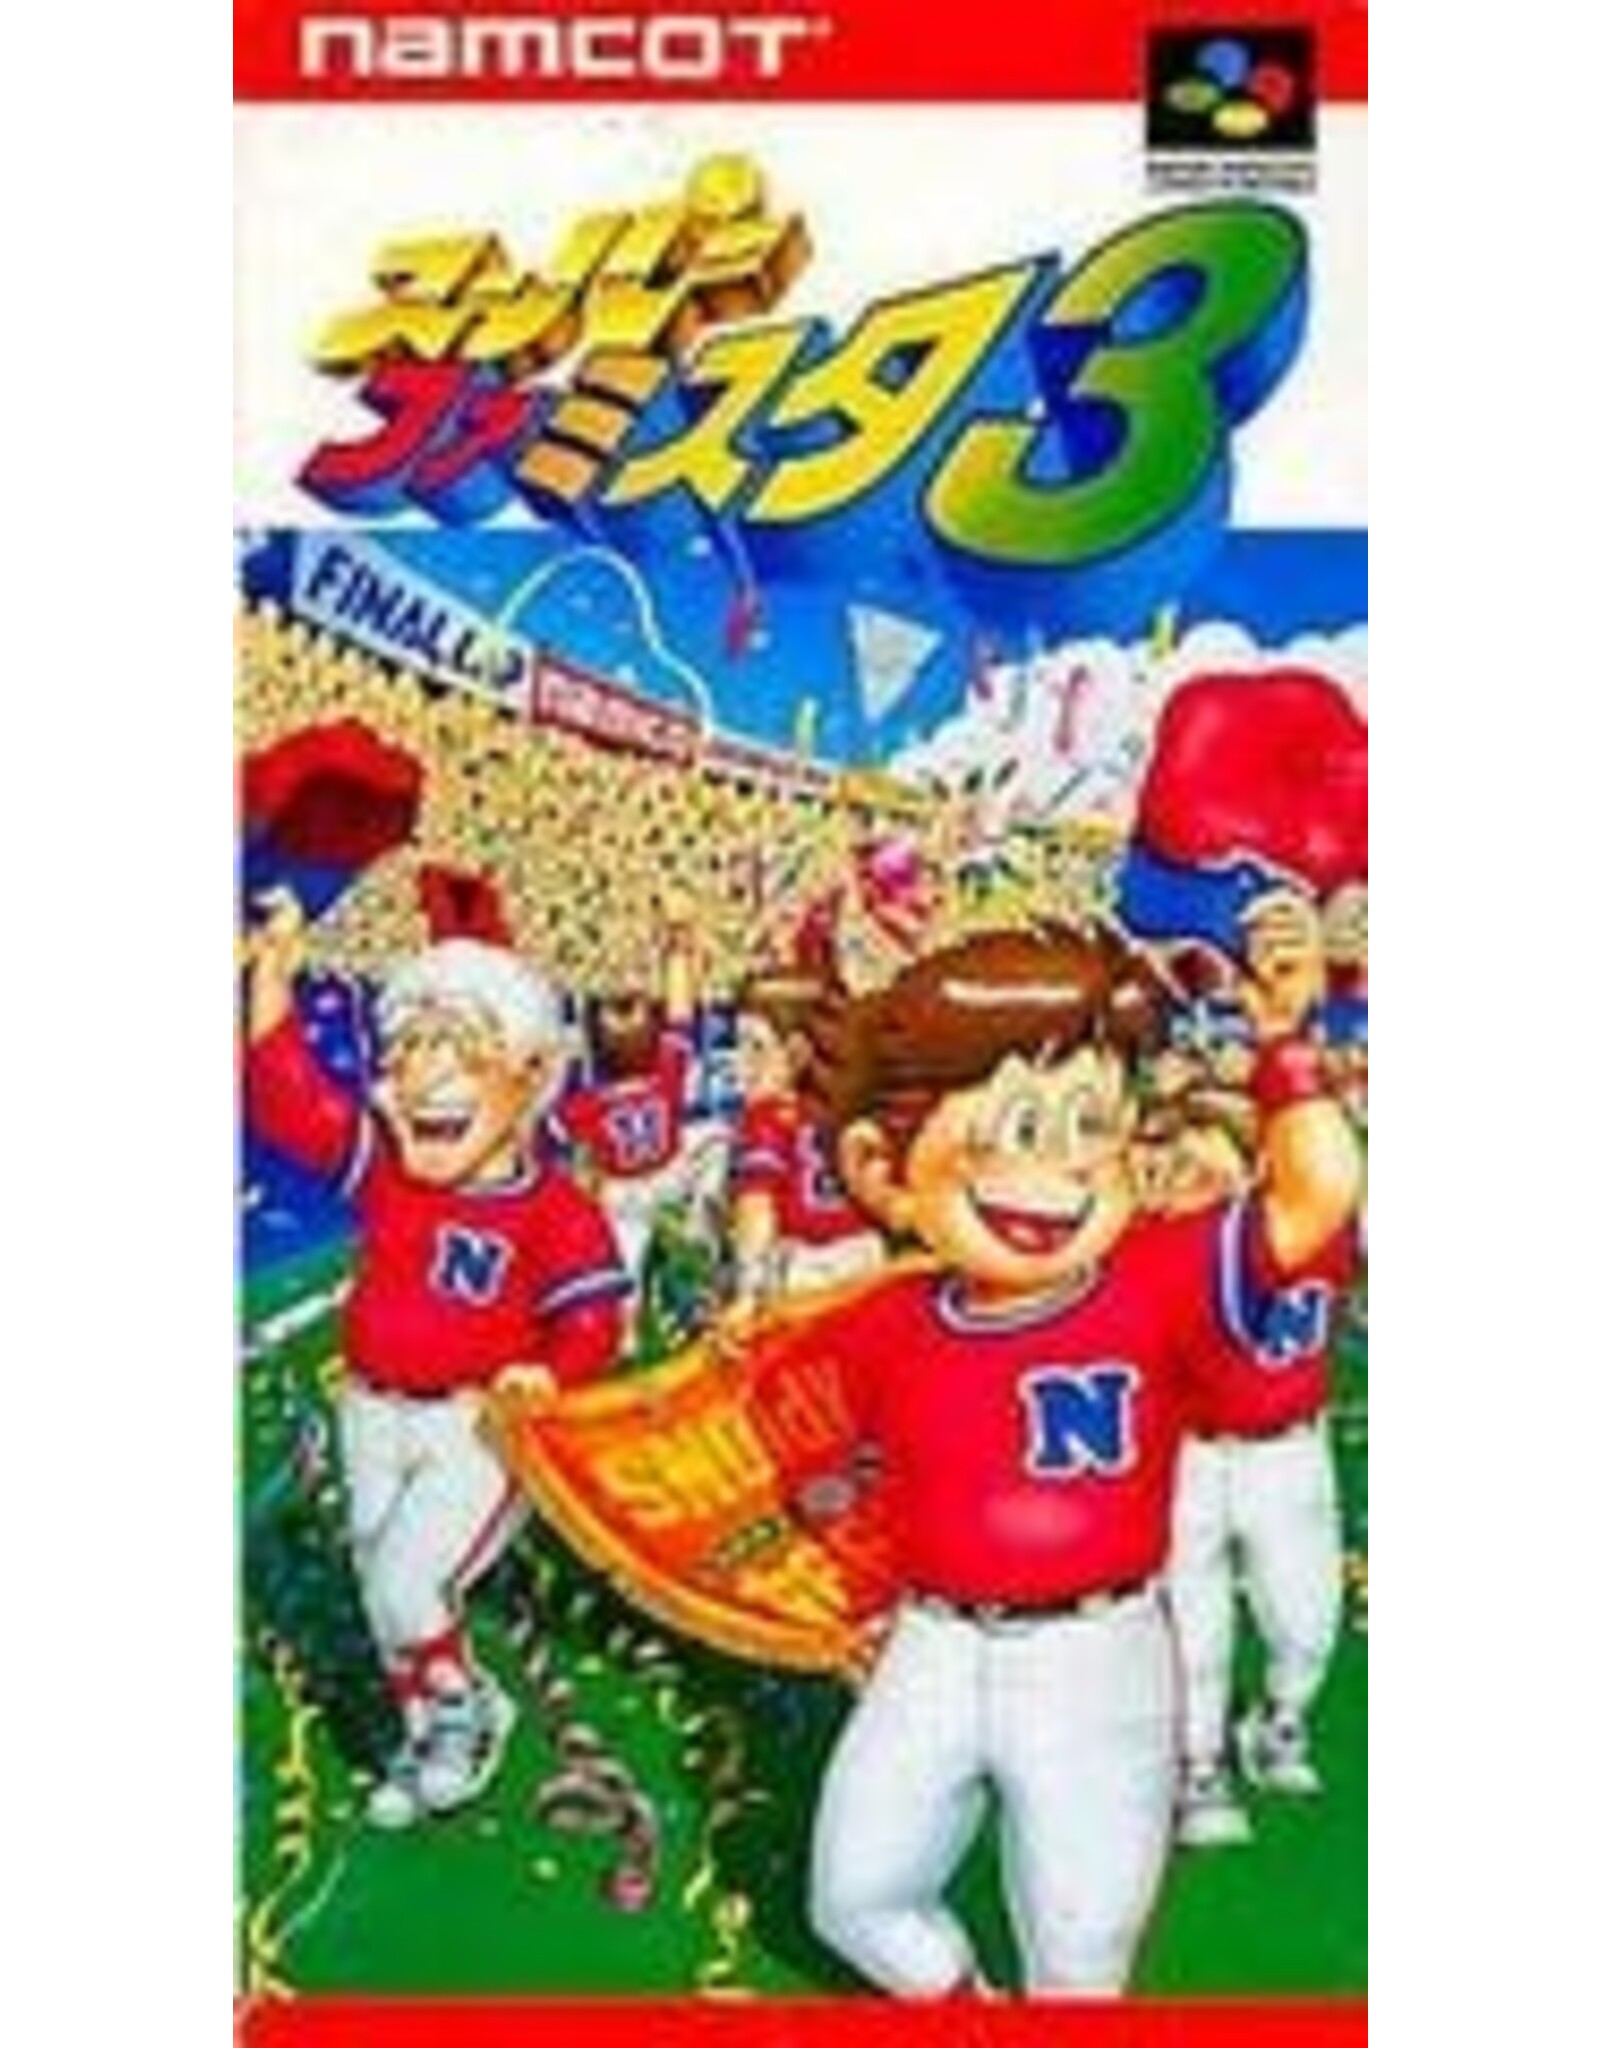 Super Famicom Super Famista 3 (Cart Only, JP Import, Damaged Cart)